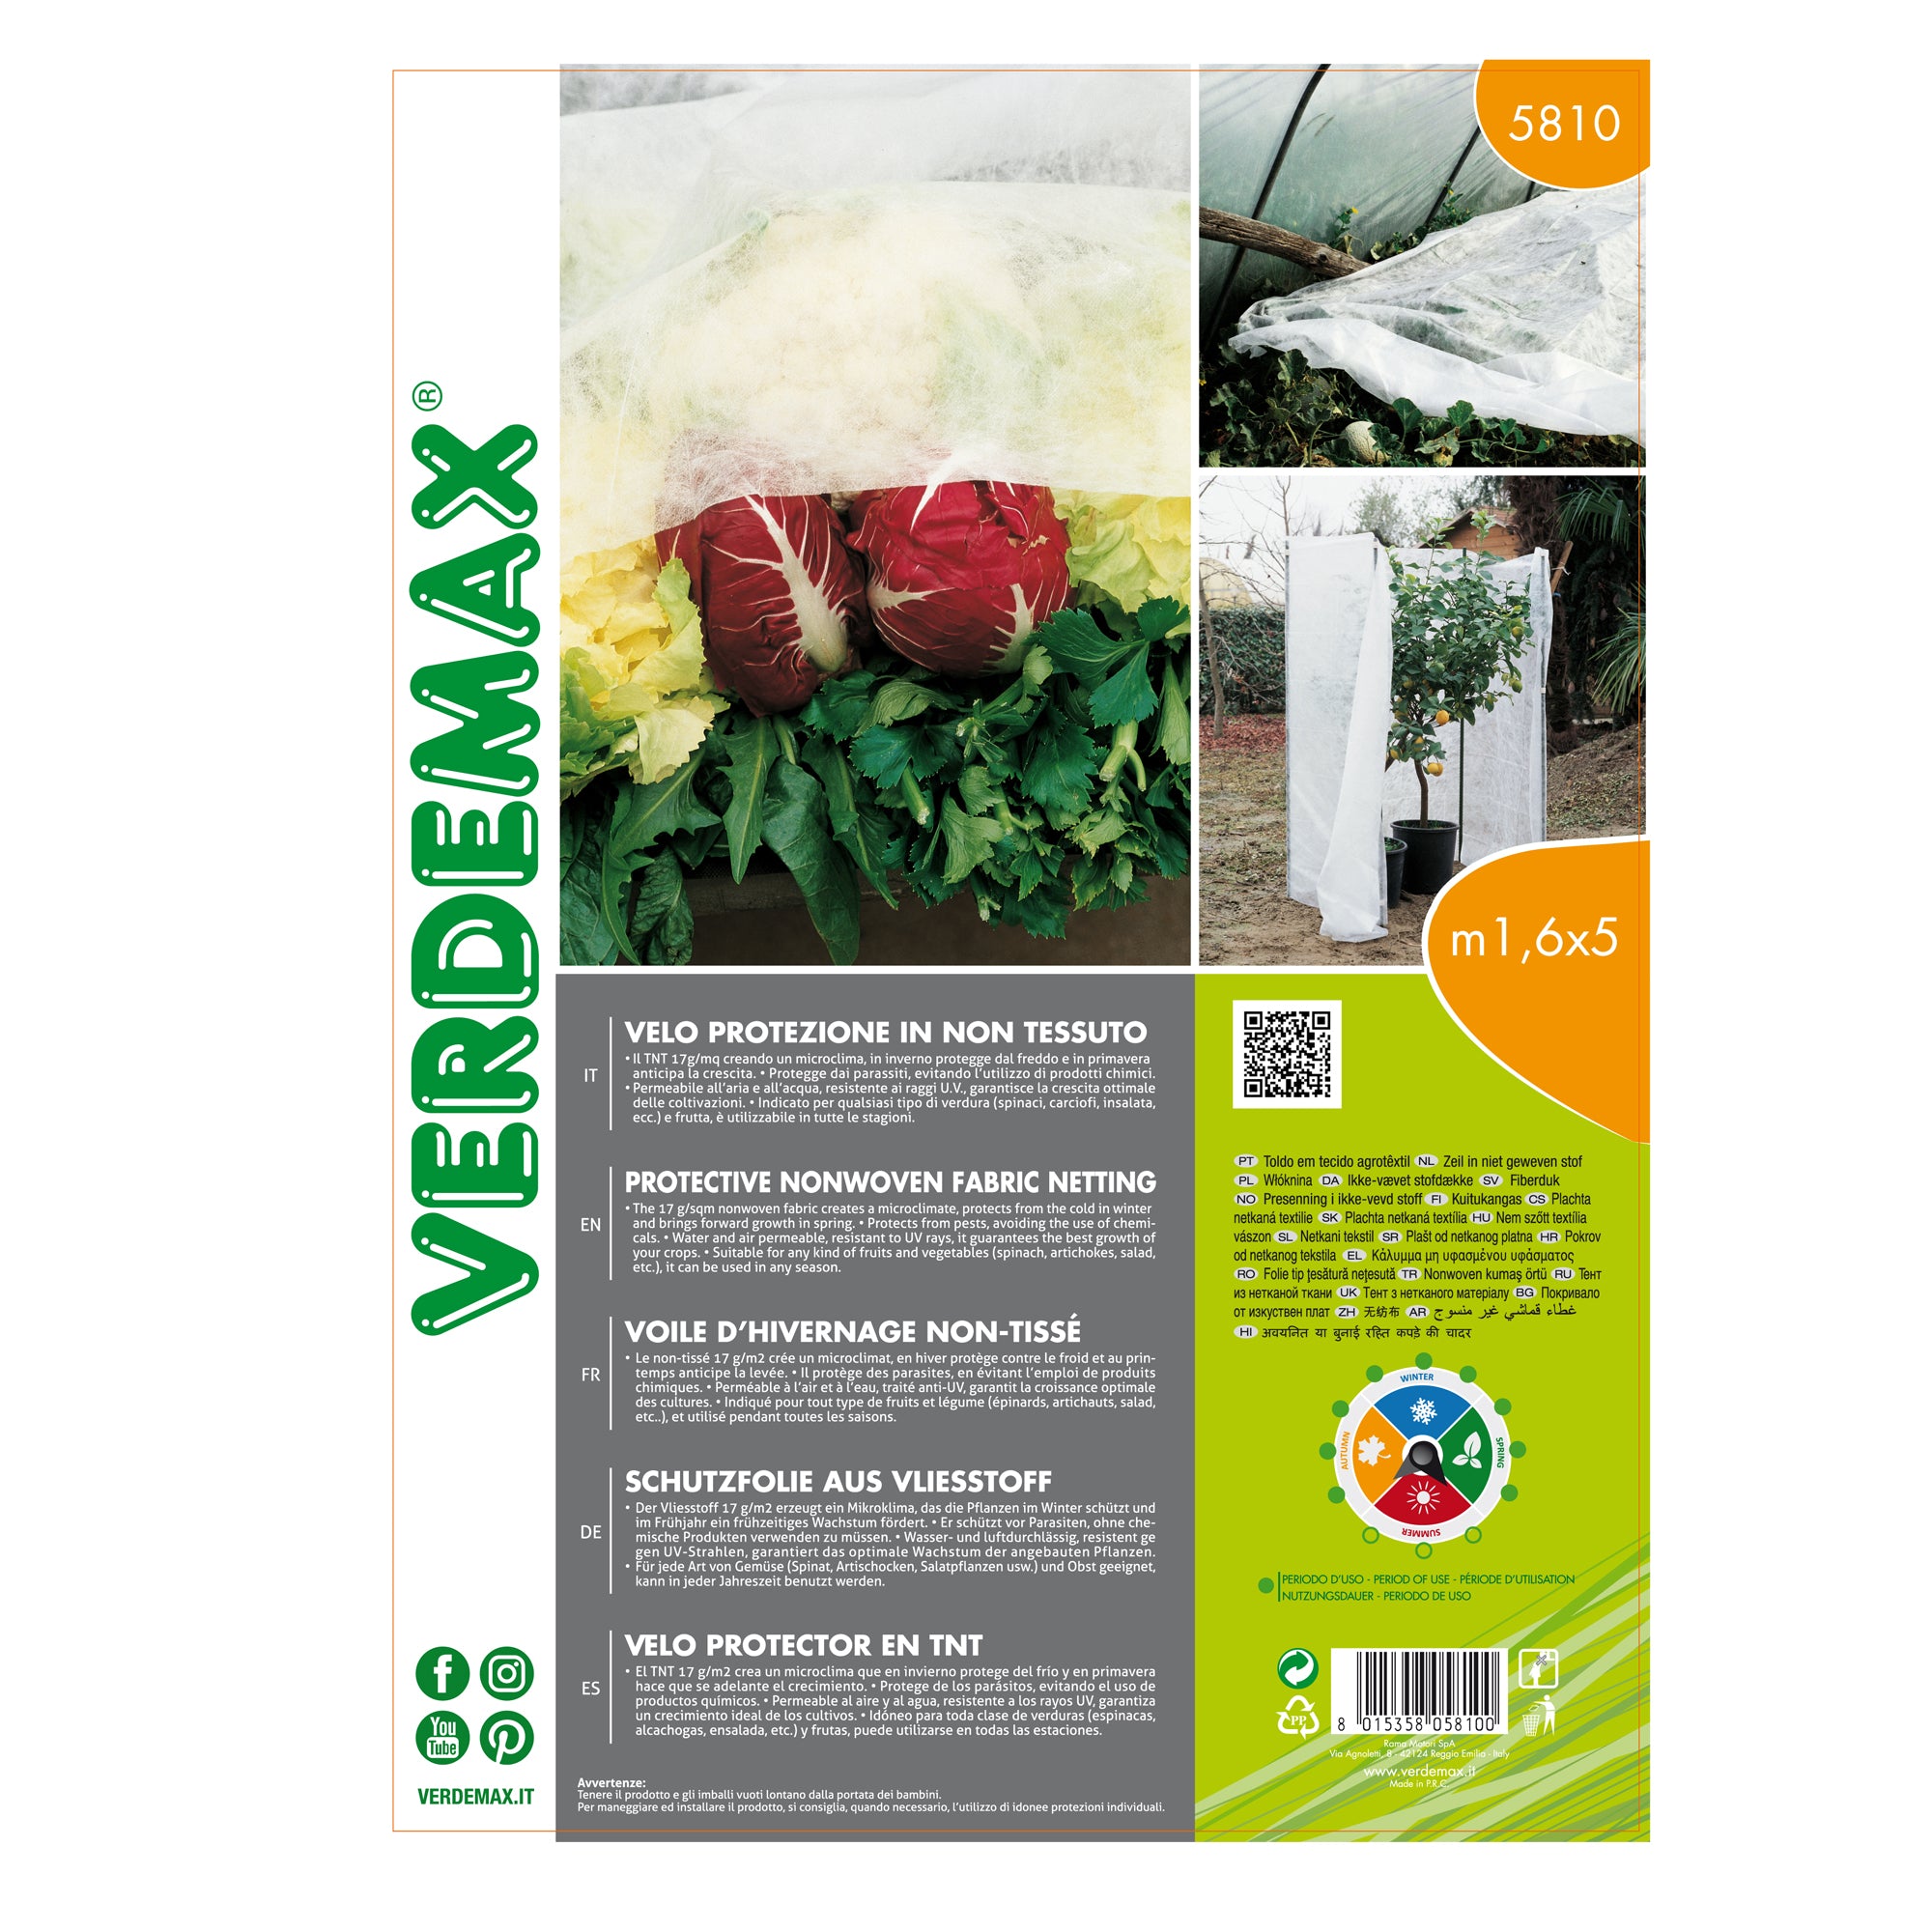 verdemax-velo-protezione-piante-tnt-17g-1-6x5-m